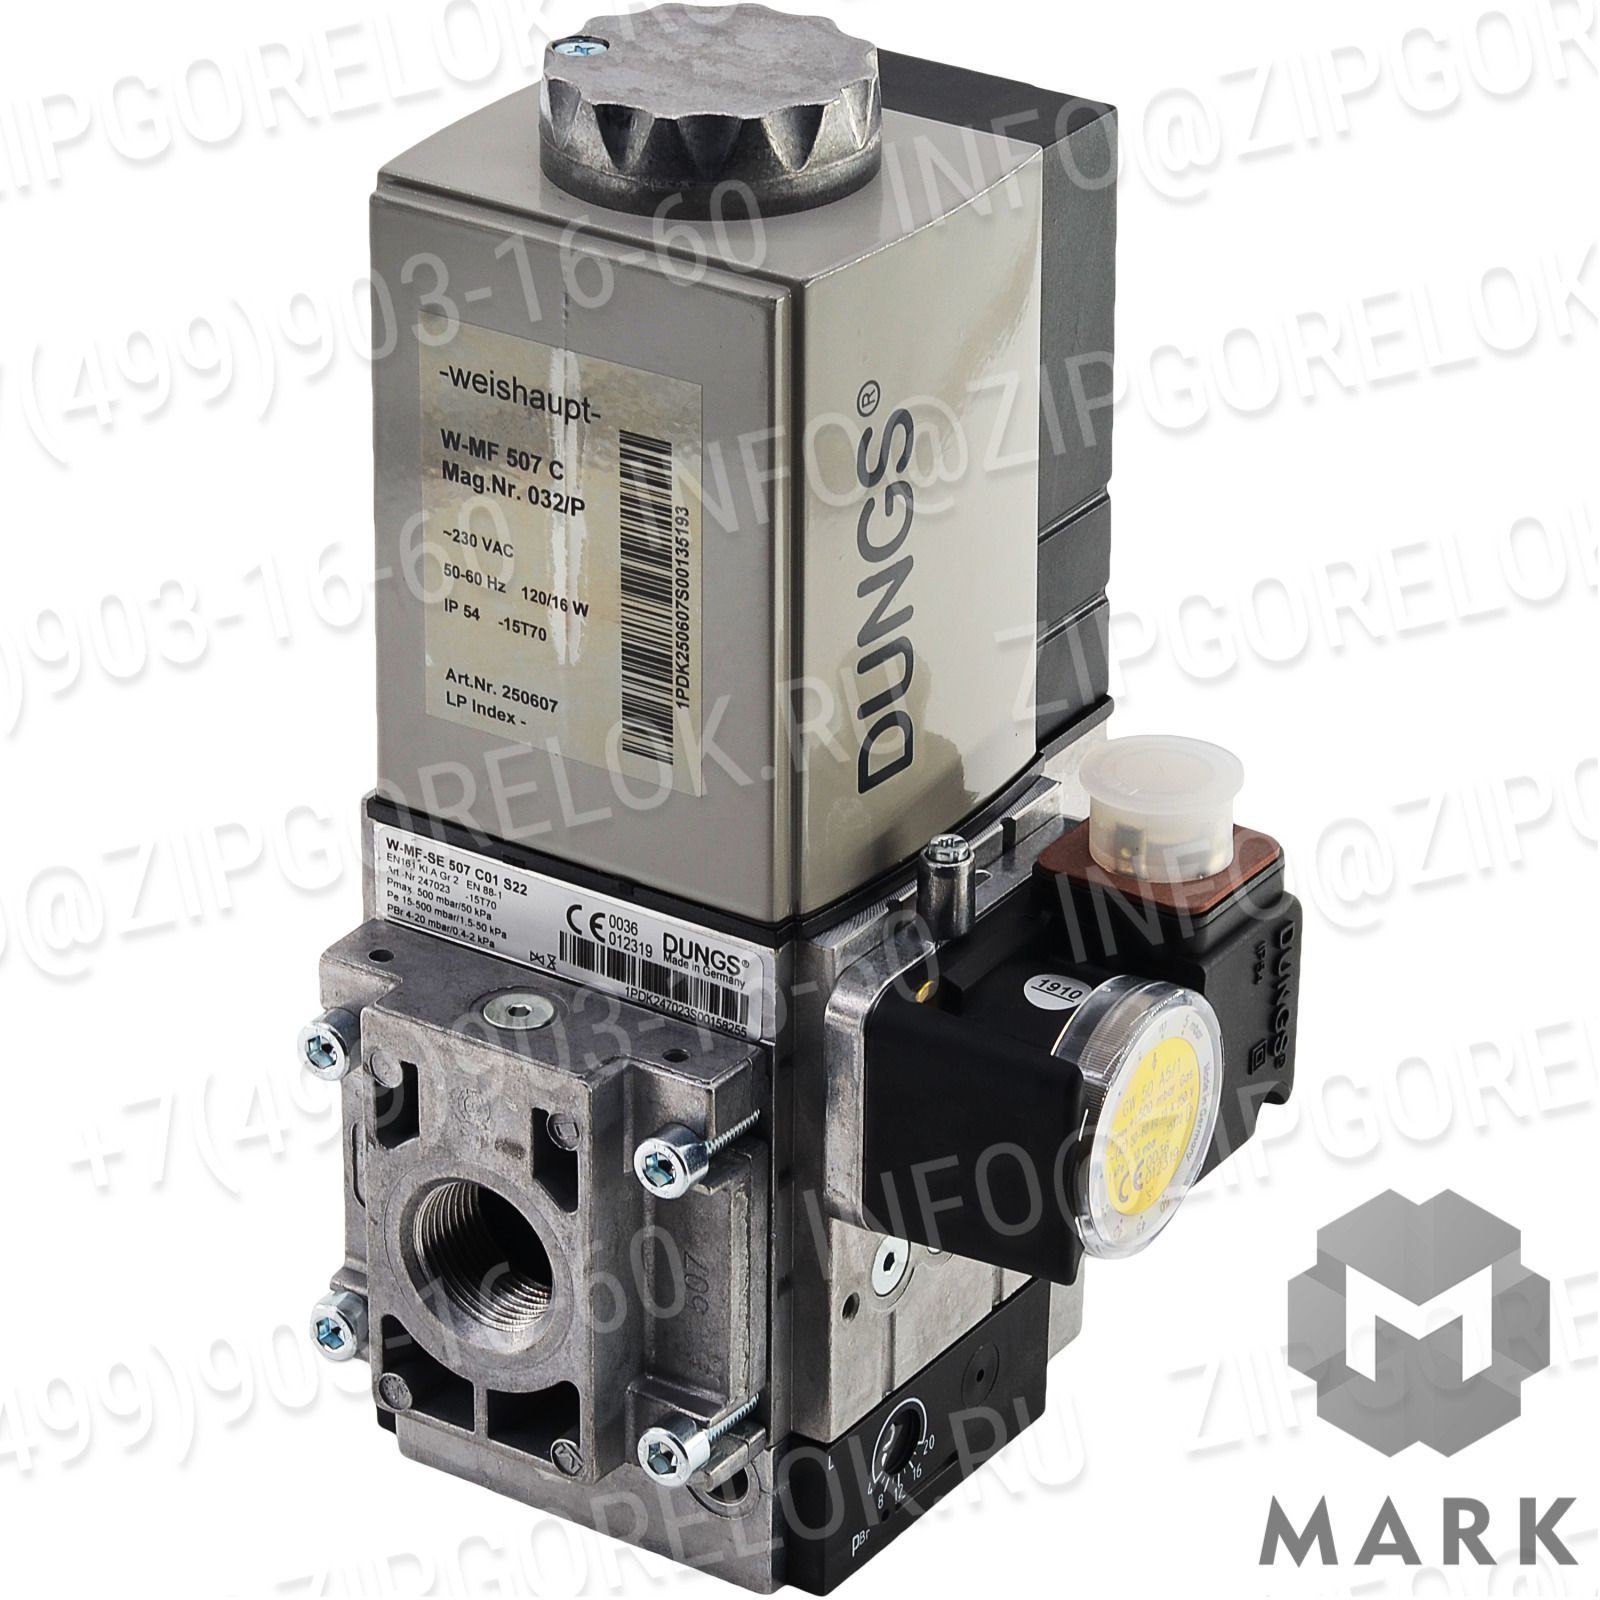 605320 Описание товара Газовый клапан DUNGS W-MF-SE 507 C01 S22 - Задать вопрос